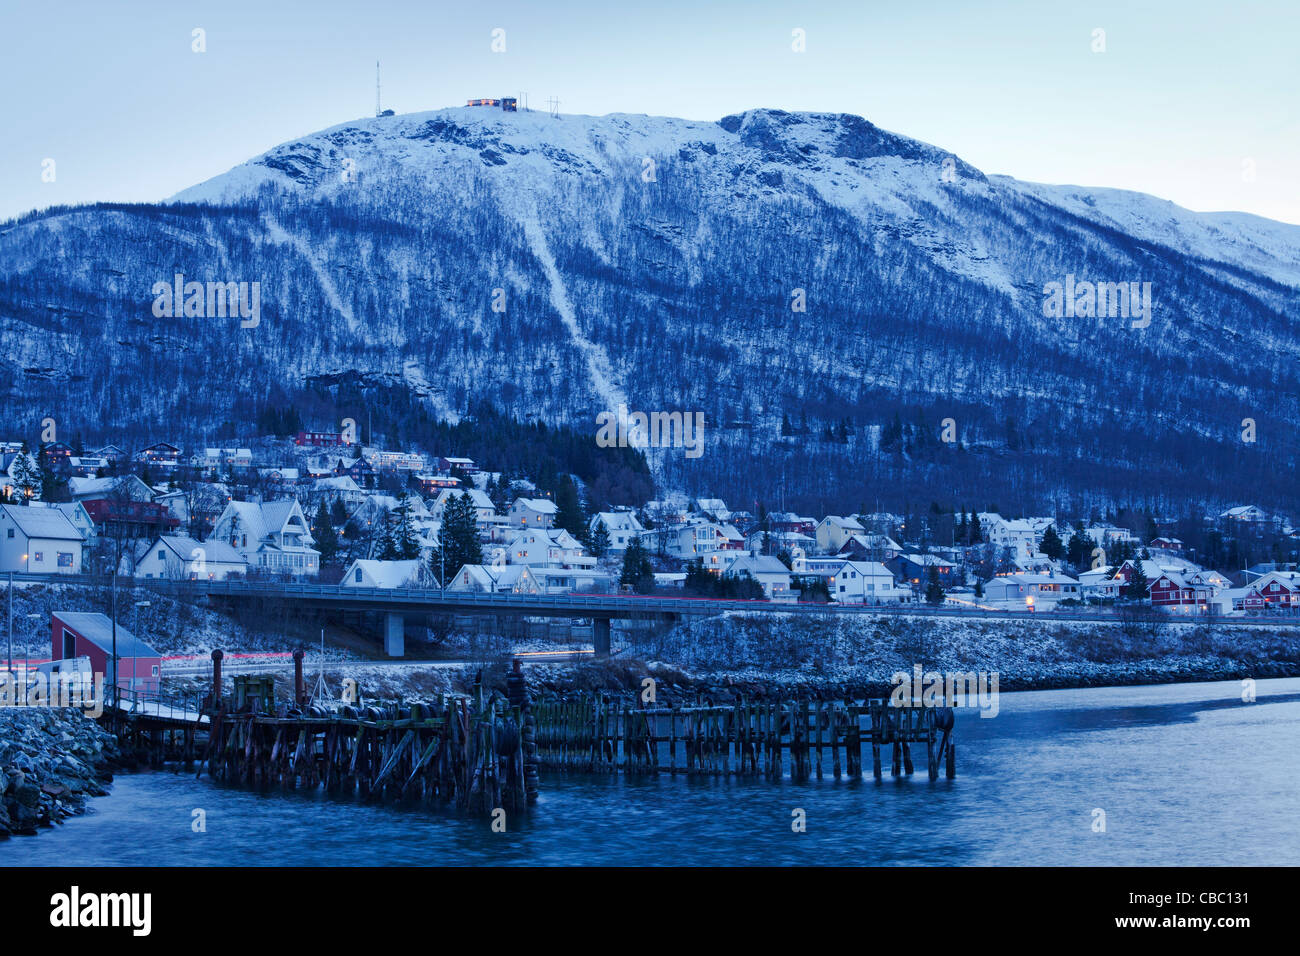 Storsteinen, overlooking the harbour area of Tromsdalen, during the winter twilight. Stock Photo